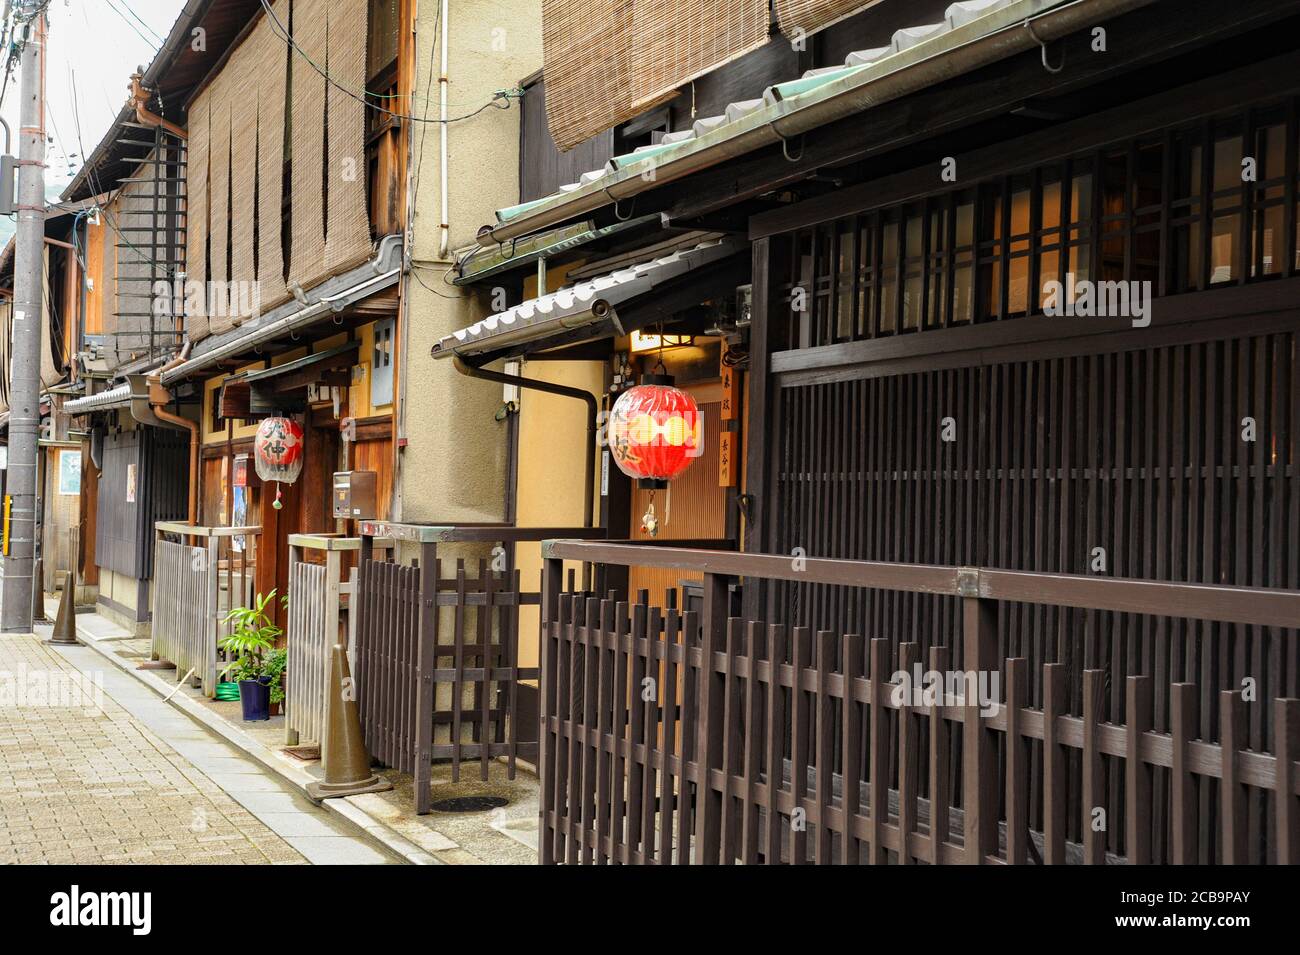 Distrito Gion, Ciudad de Kyoto, Prefectura de Kyoto, Japón - 29 de agosto de 2009: Fachada de la casa tradicional japonesa con faroles rojos antiguos (Toro - Lanterns). Foto de stock